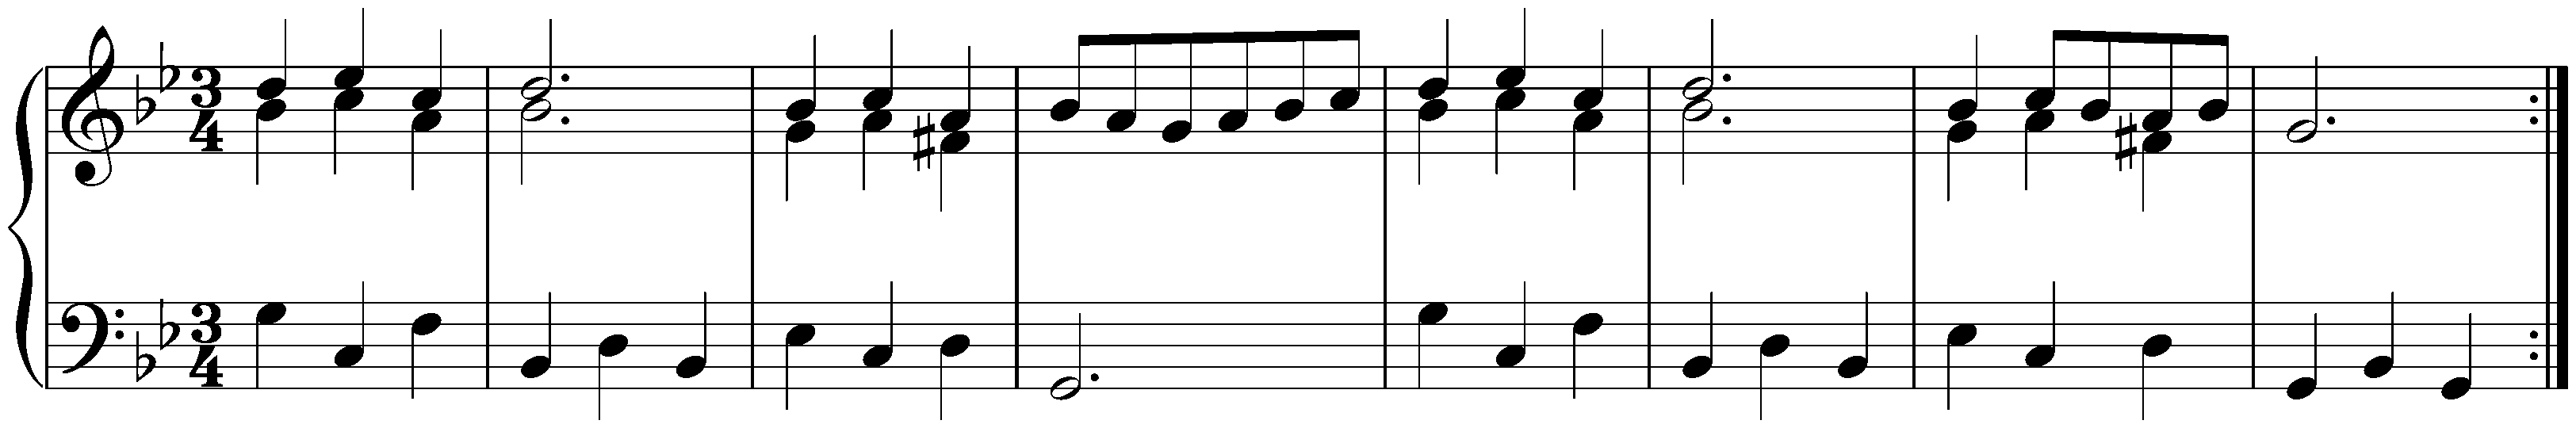 Suite in G minor, HWV 453; 3. Menuet I – Menuet II – Menuet I